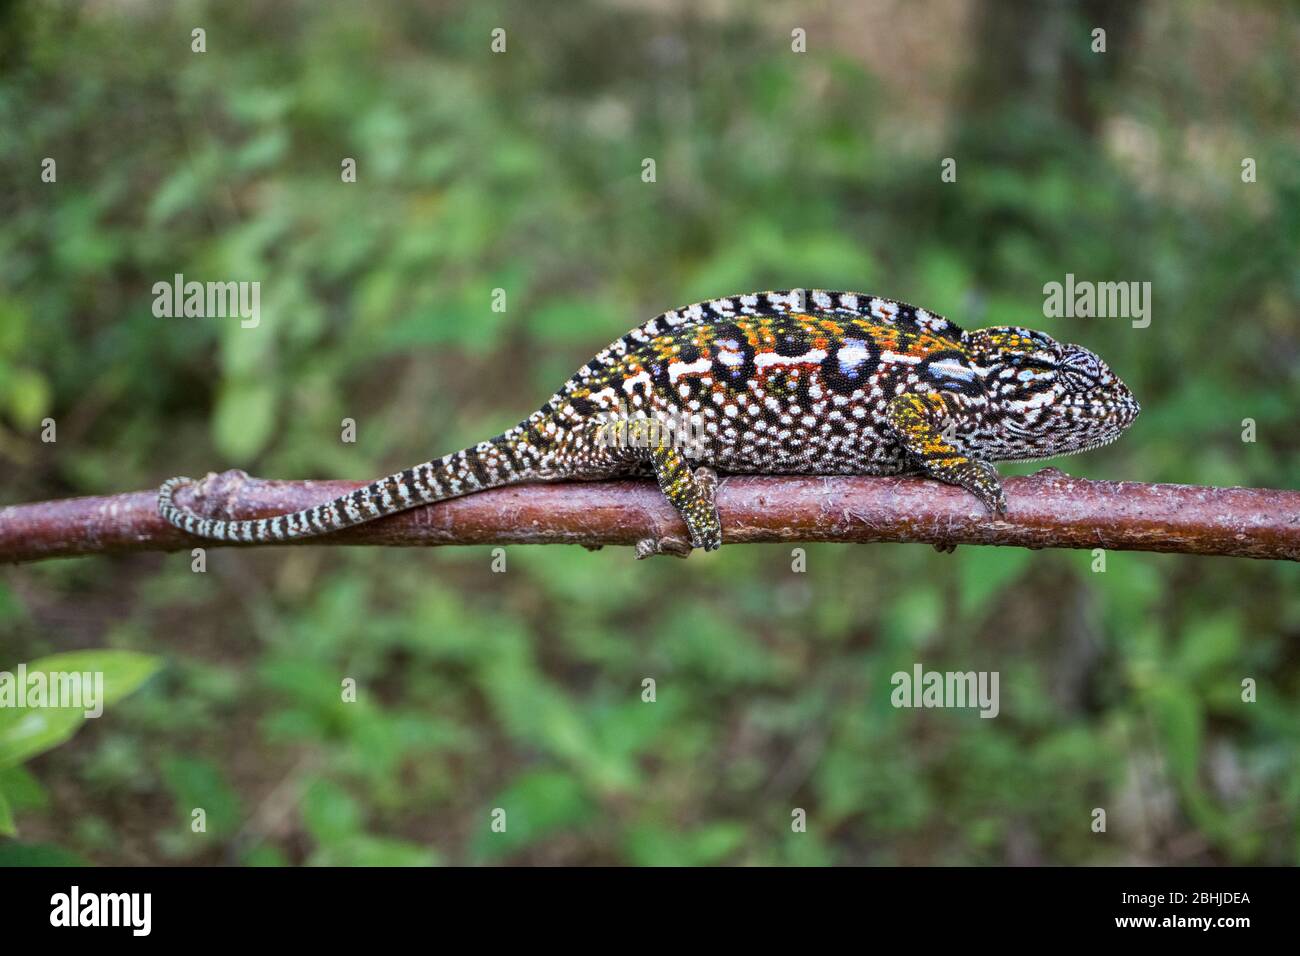 Chameleon of Madagascar Stock Photo